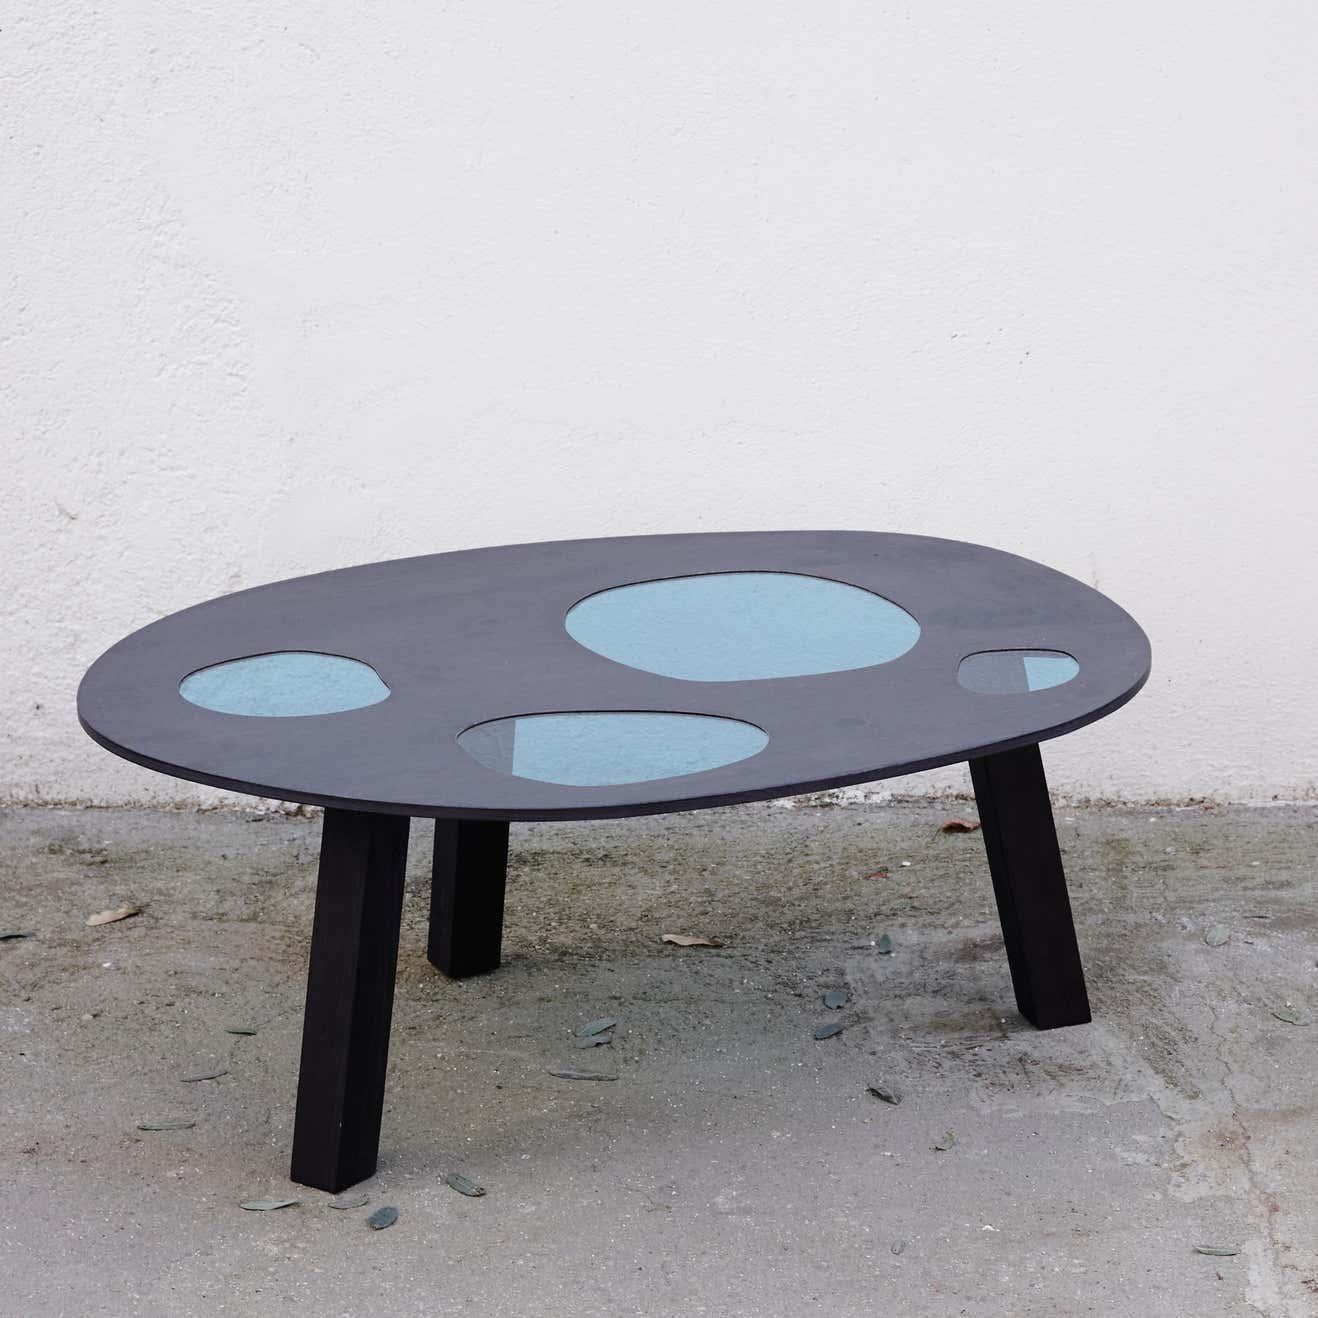 Prototyp eines Tisches, entworfen von Fernando und Humberto Campana im Jahr 2016
Hergestellt in Spanien von BD Barcelona Design.

Einzigartiges Stück.

Humberto Campana, 1953, und Fernando Campana, 1961, sind brasilianische Designer.
1983 taten sich